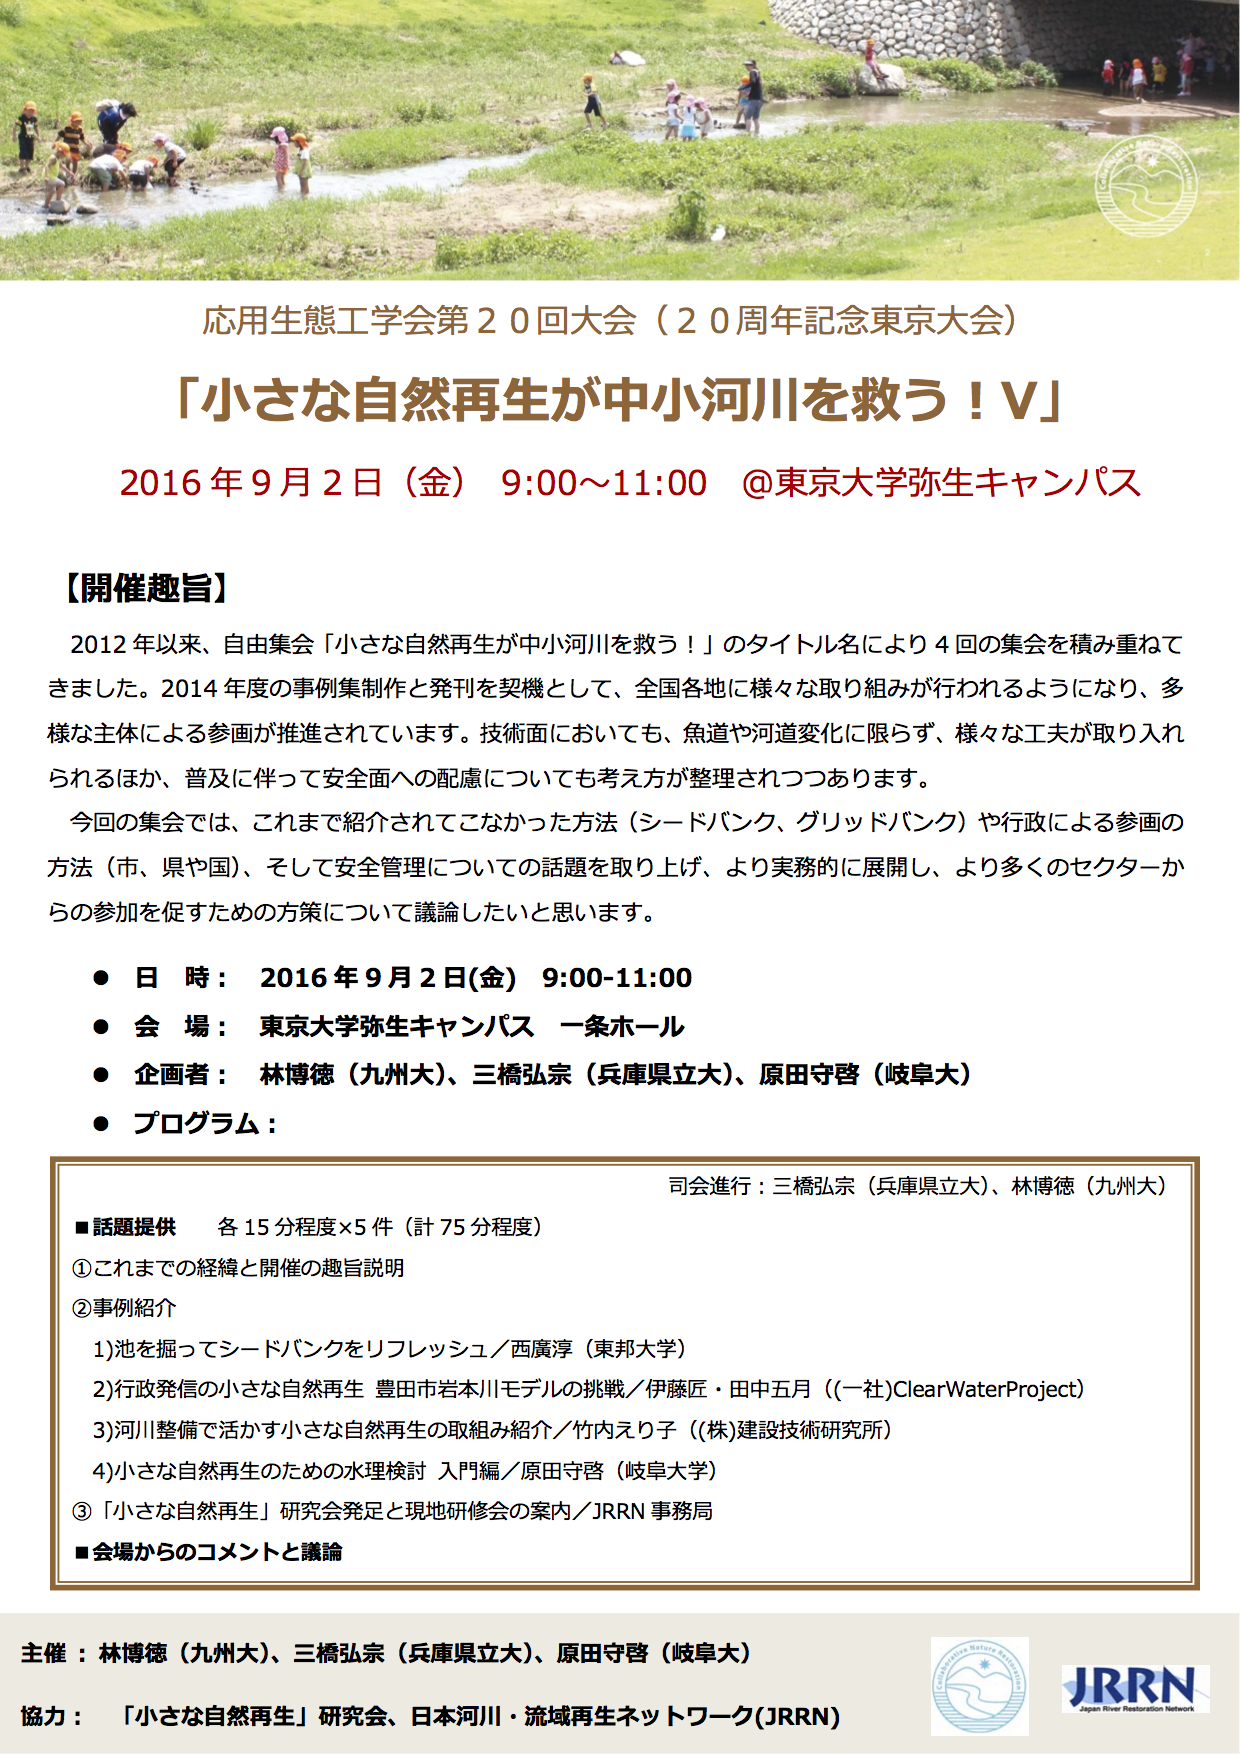 岩本川の取り組み 「応用生態工学会第20回大会」にて発表